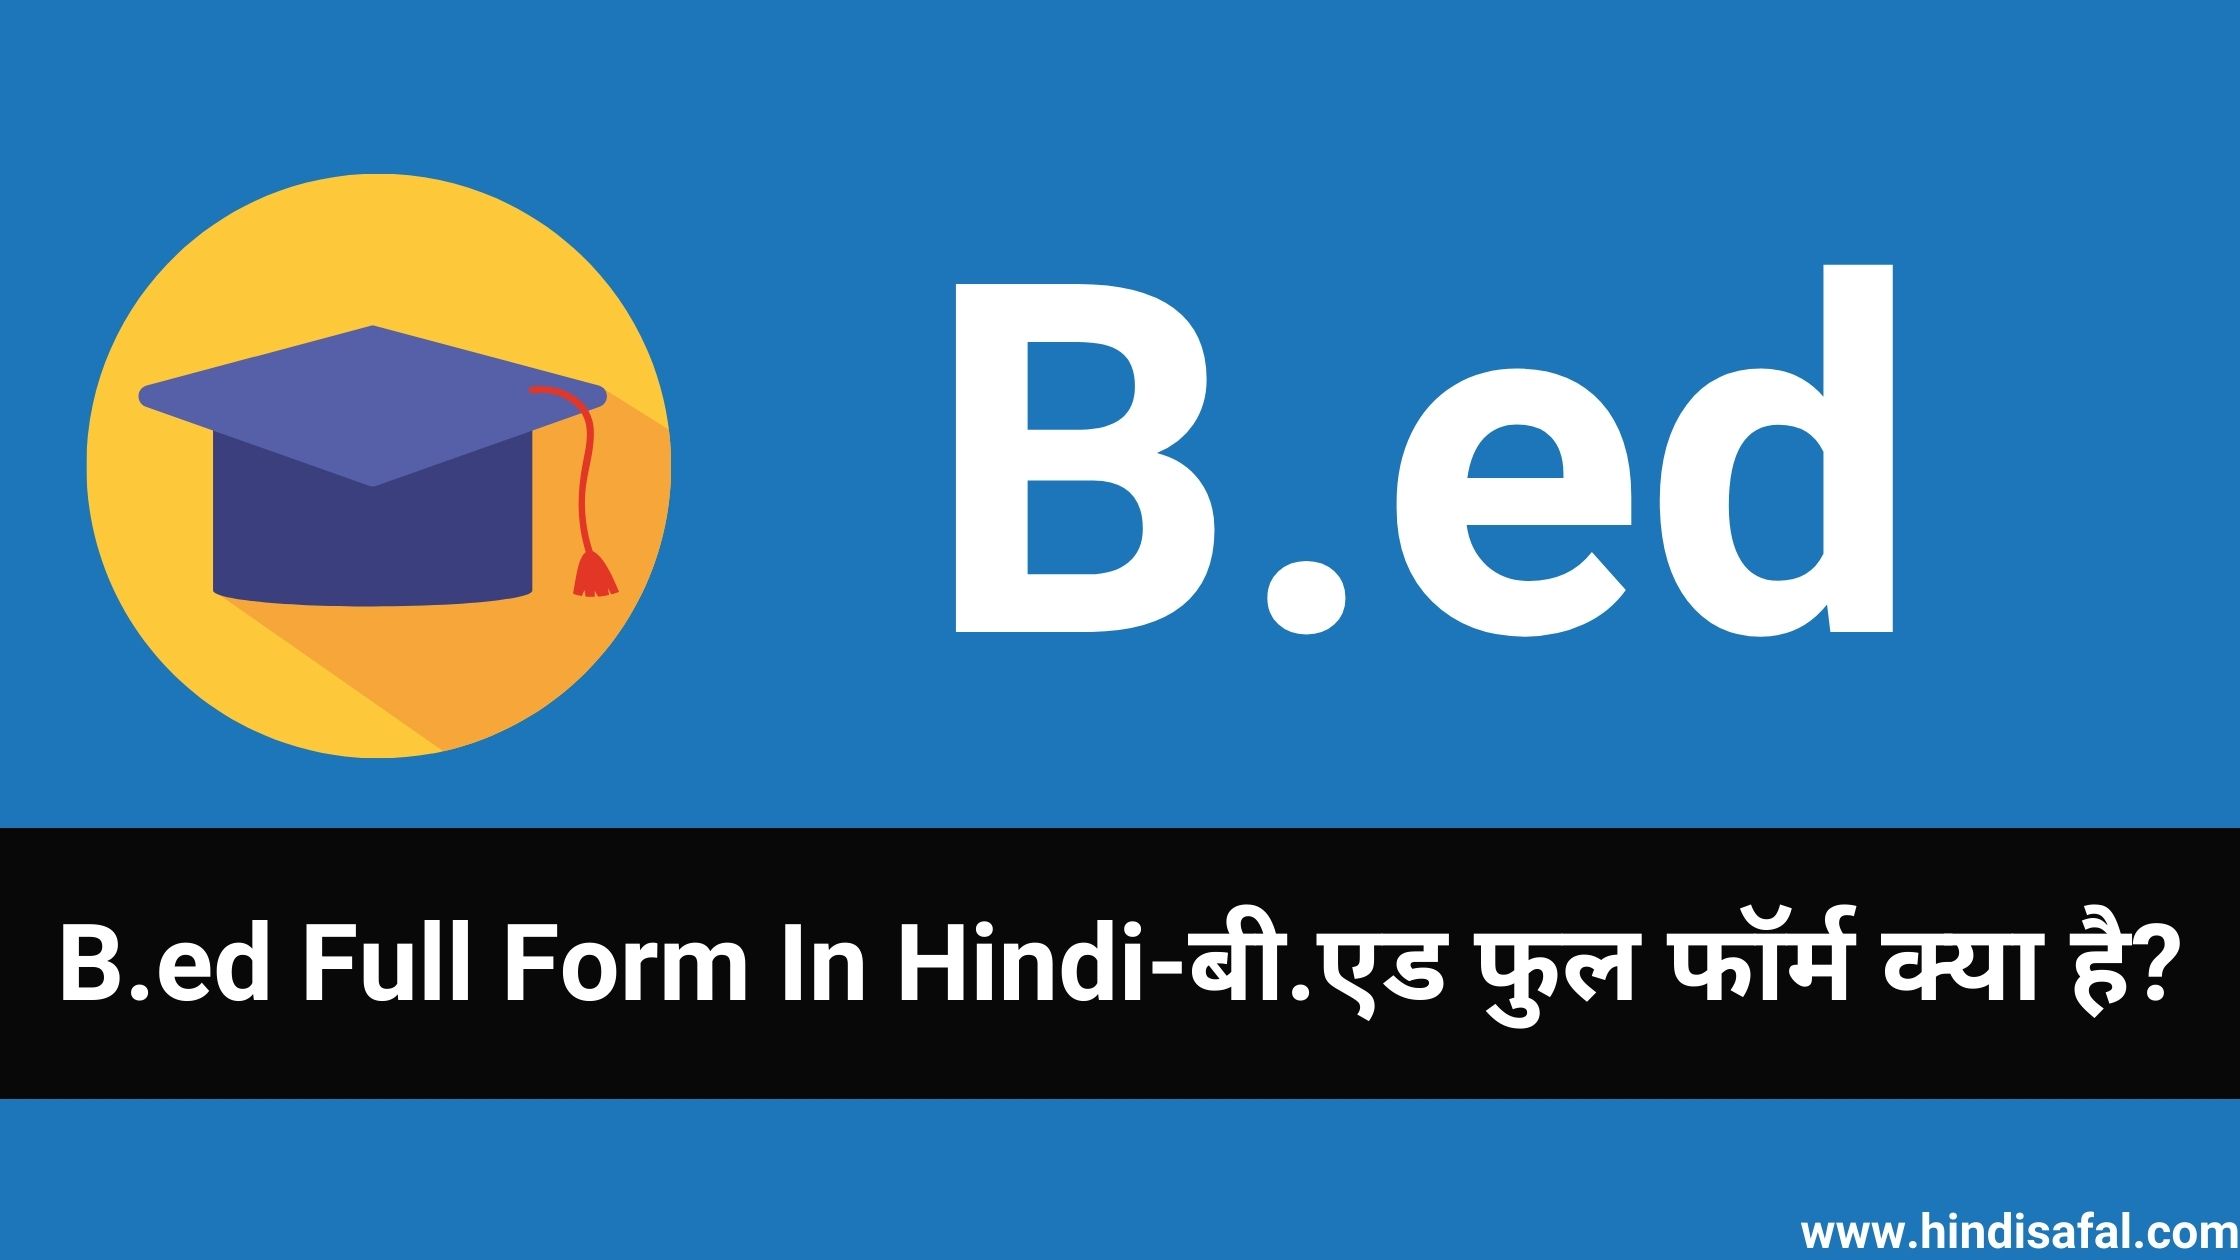 B.ed Full Form In Hindi-बी.एड फुल फॉर्म क्या है?